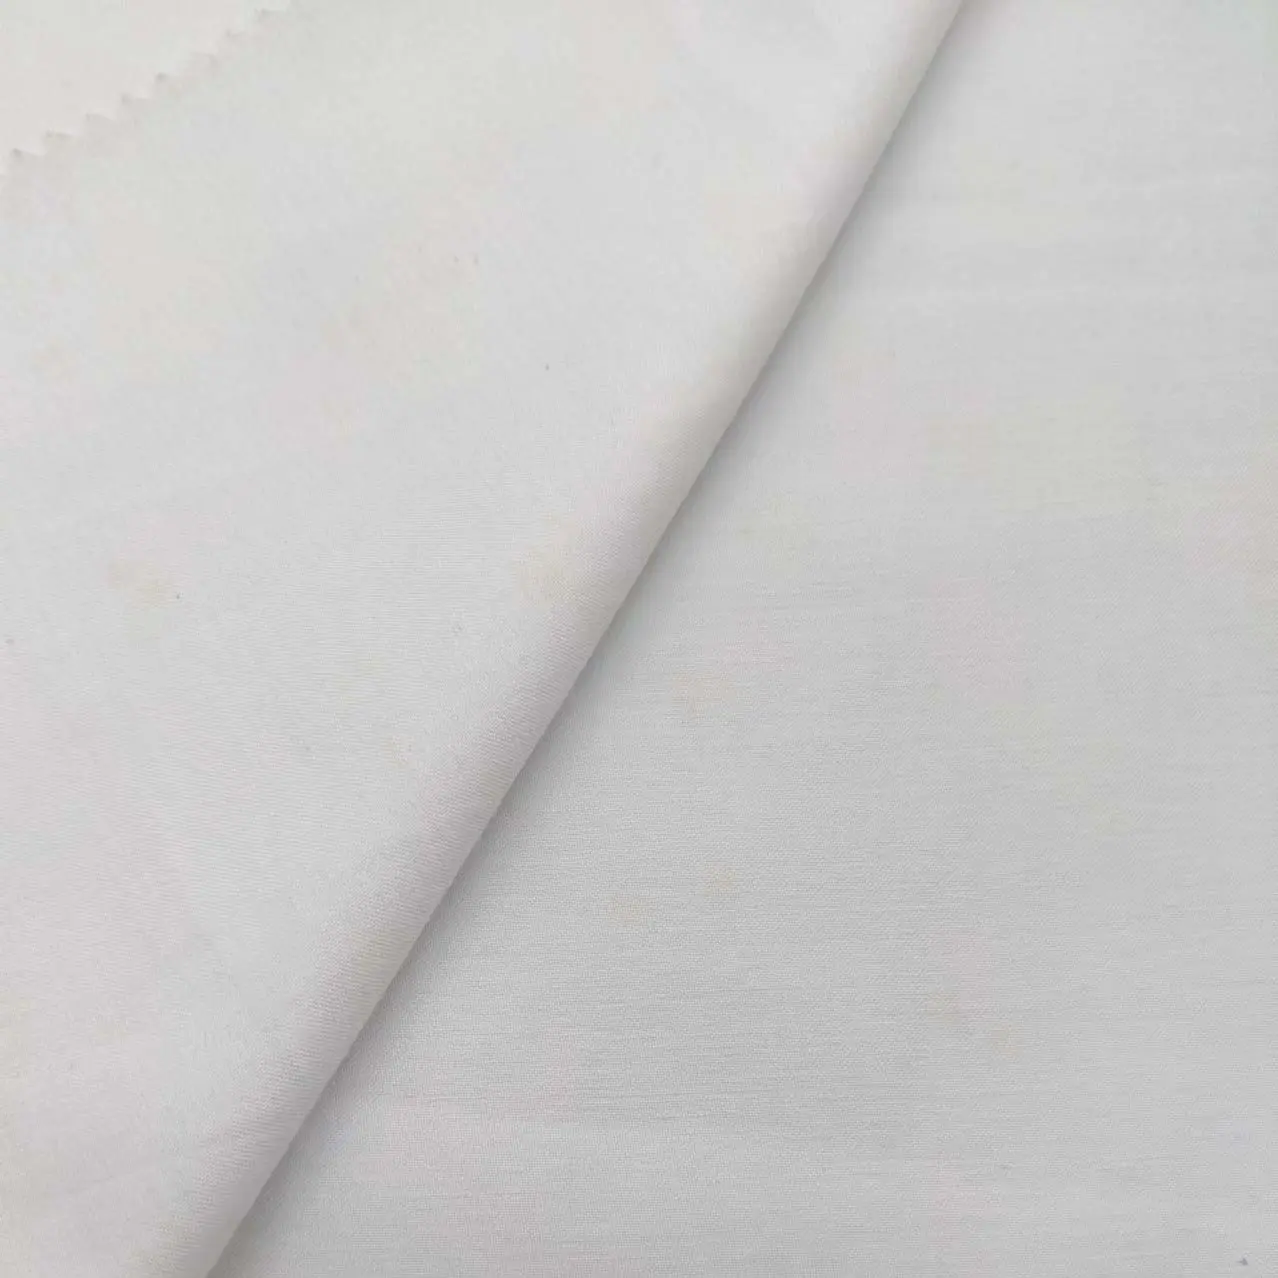 Großhandel 50 dx50s Poly Baumwolle weiße Farbe Satin Home Textil Bettwäsche Stoff